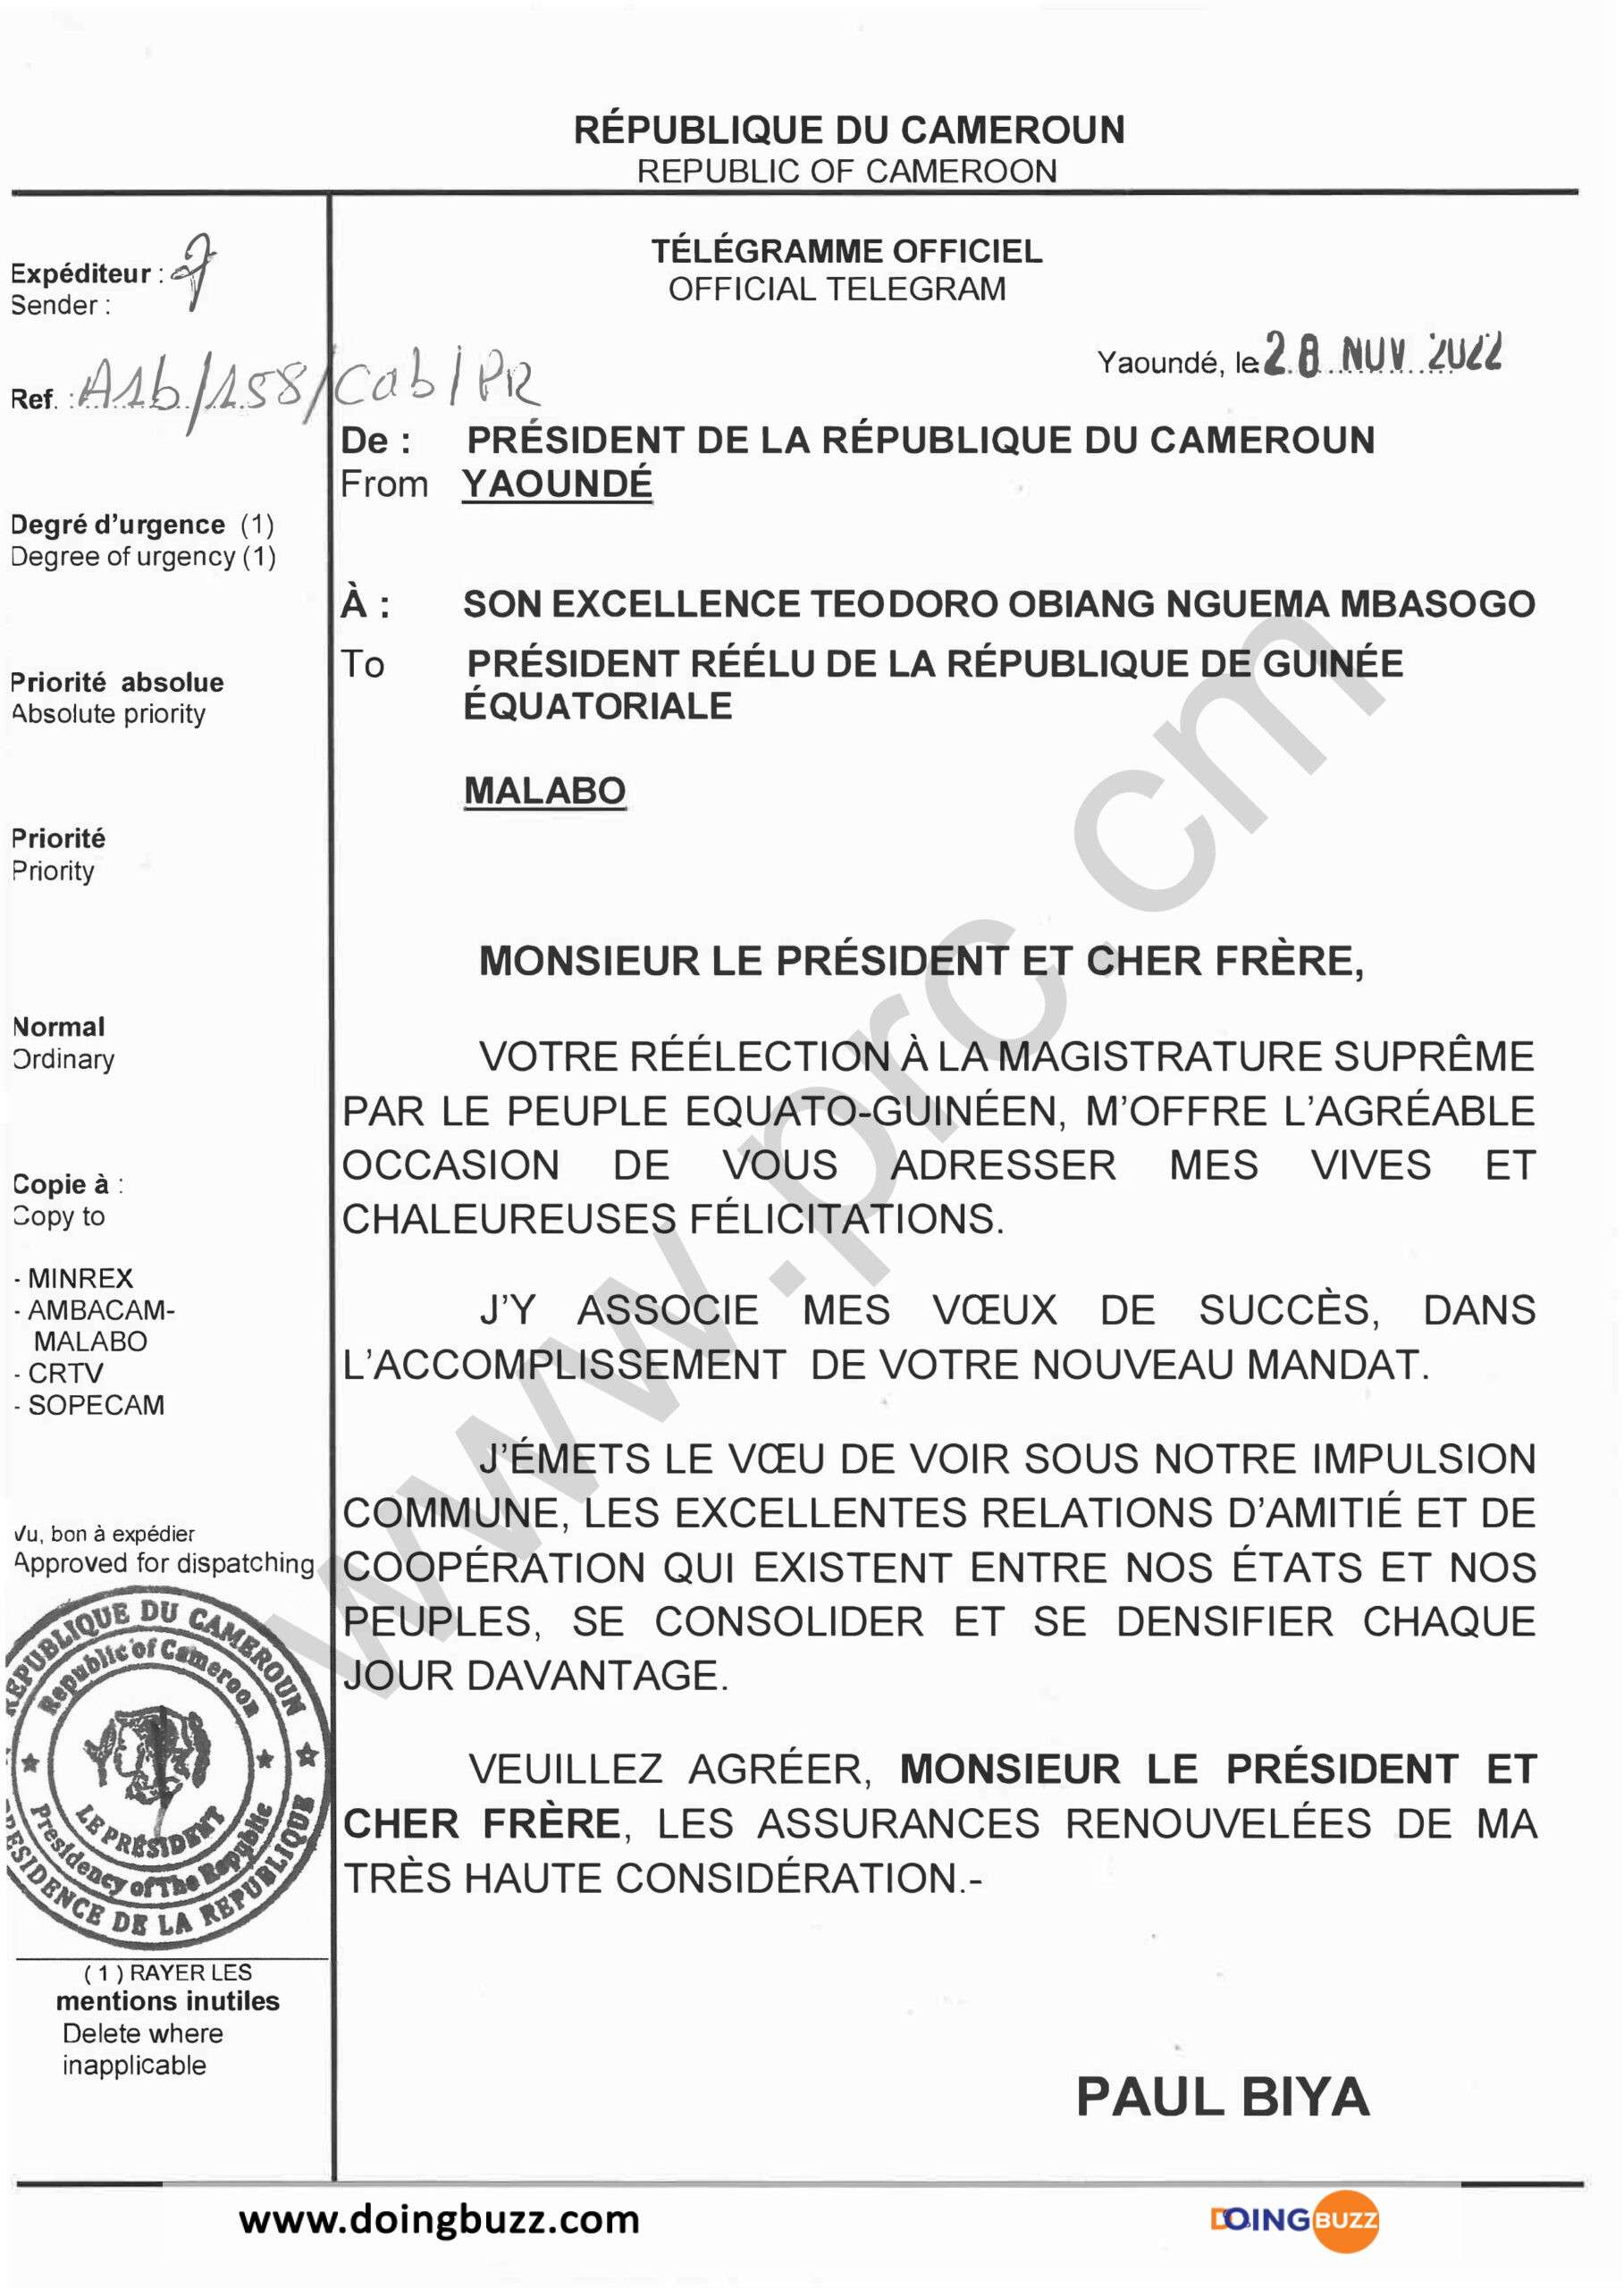 Paul Biya Félicite Teodoro Obiang Pour Sa Réélection En Guinée Équatorial 